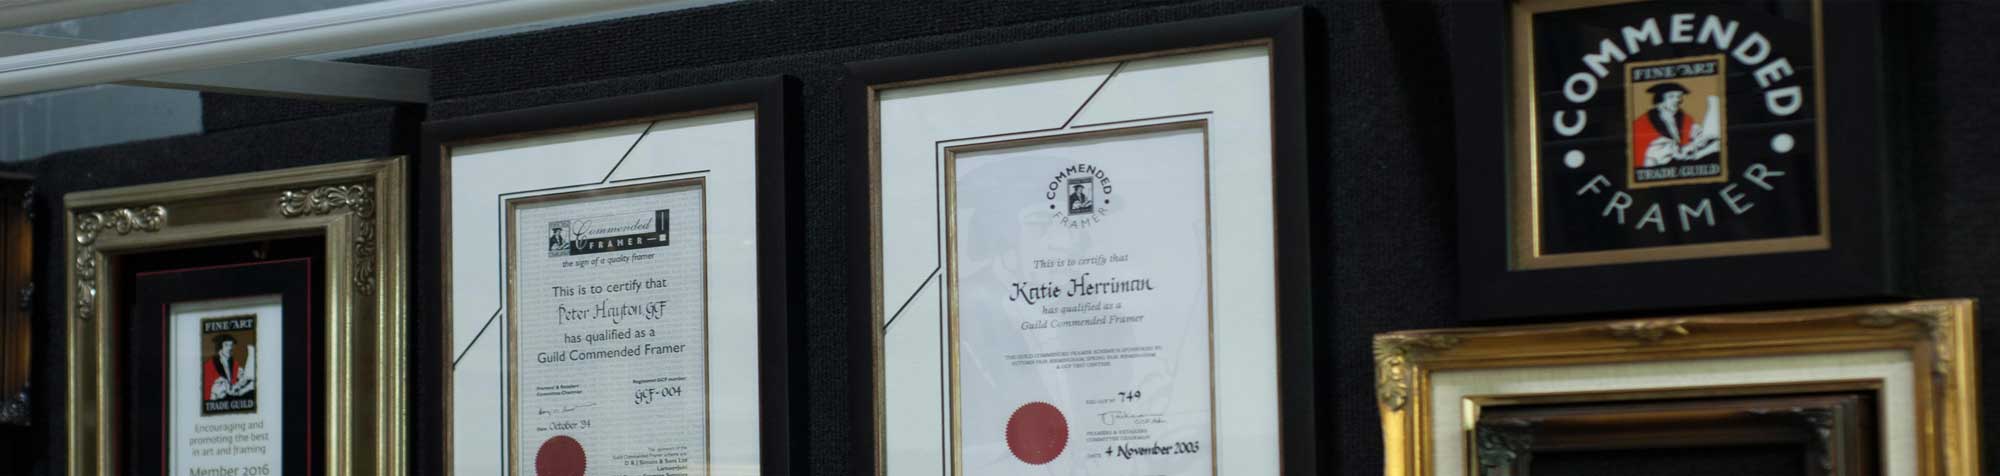 Framing certificates